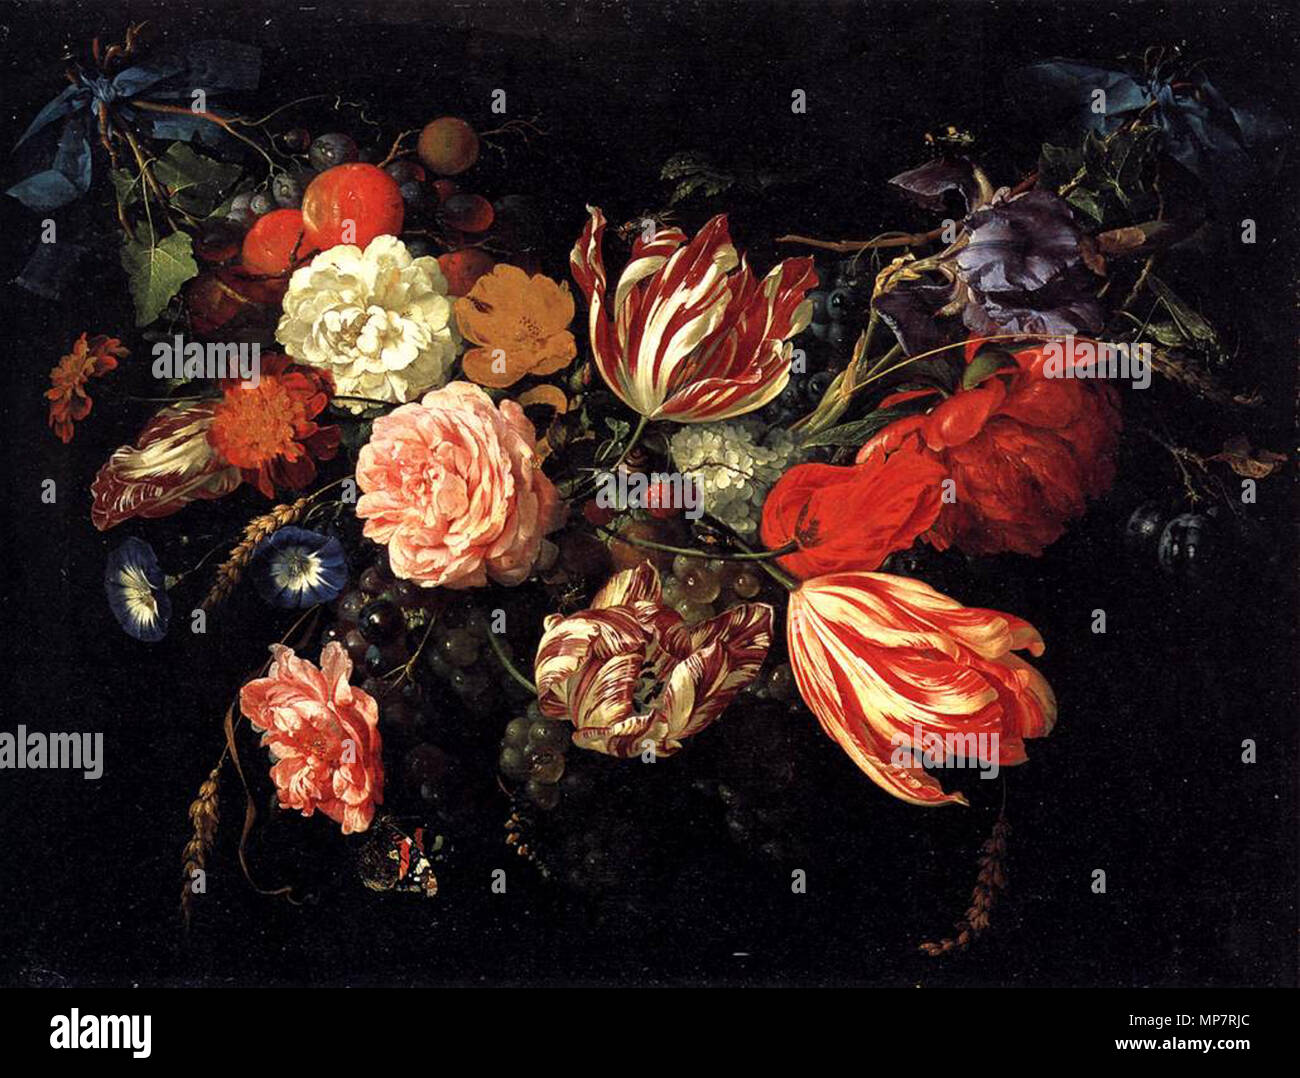 Festone di fiori e frutta. Questo dipinto presenta almeno quattro Semper Augustus tulipani. Questi fiori sono state considerate estremamente preziose al momento questa commissione dipinti. 1699s. 706 Jan-Davidsz-de-Heem-festone con fiori e frutti-(1670) Foto Stock